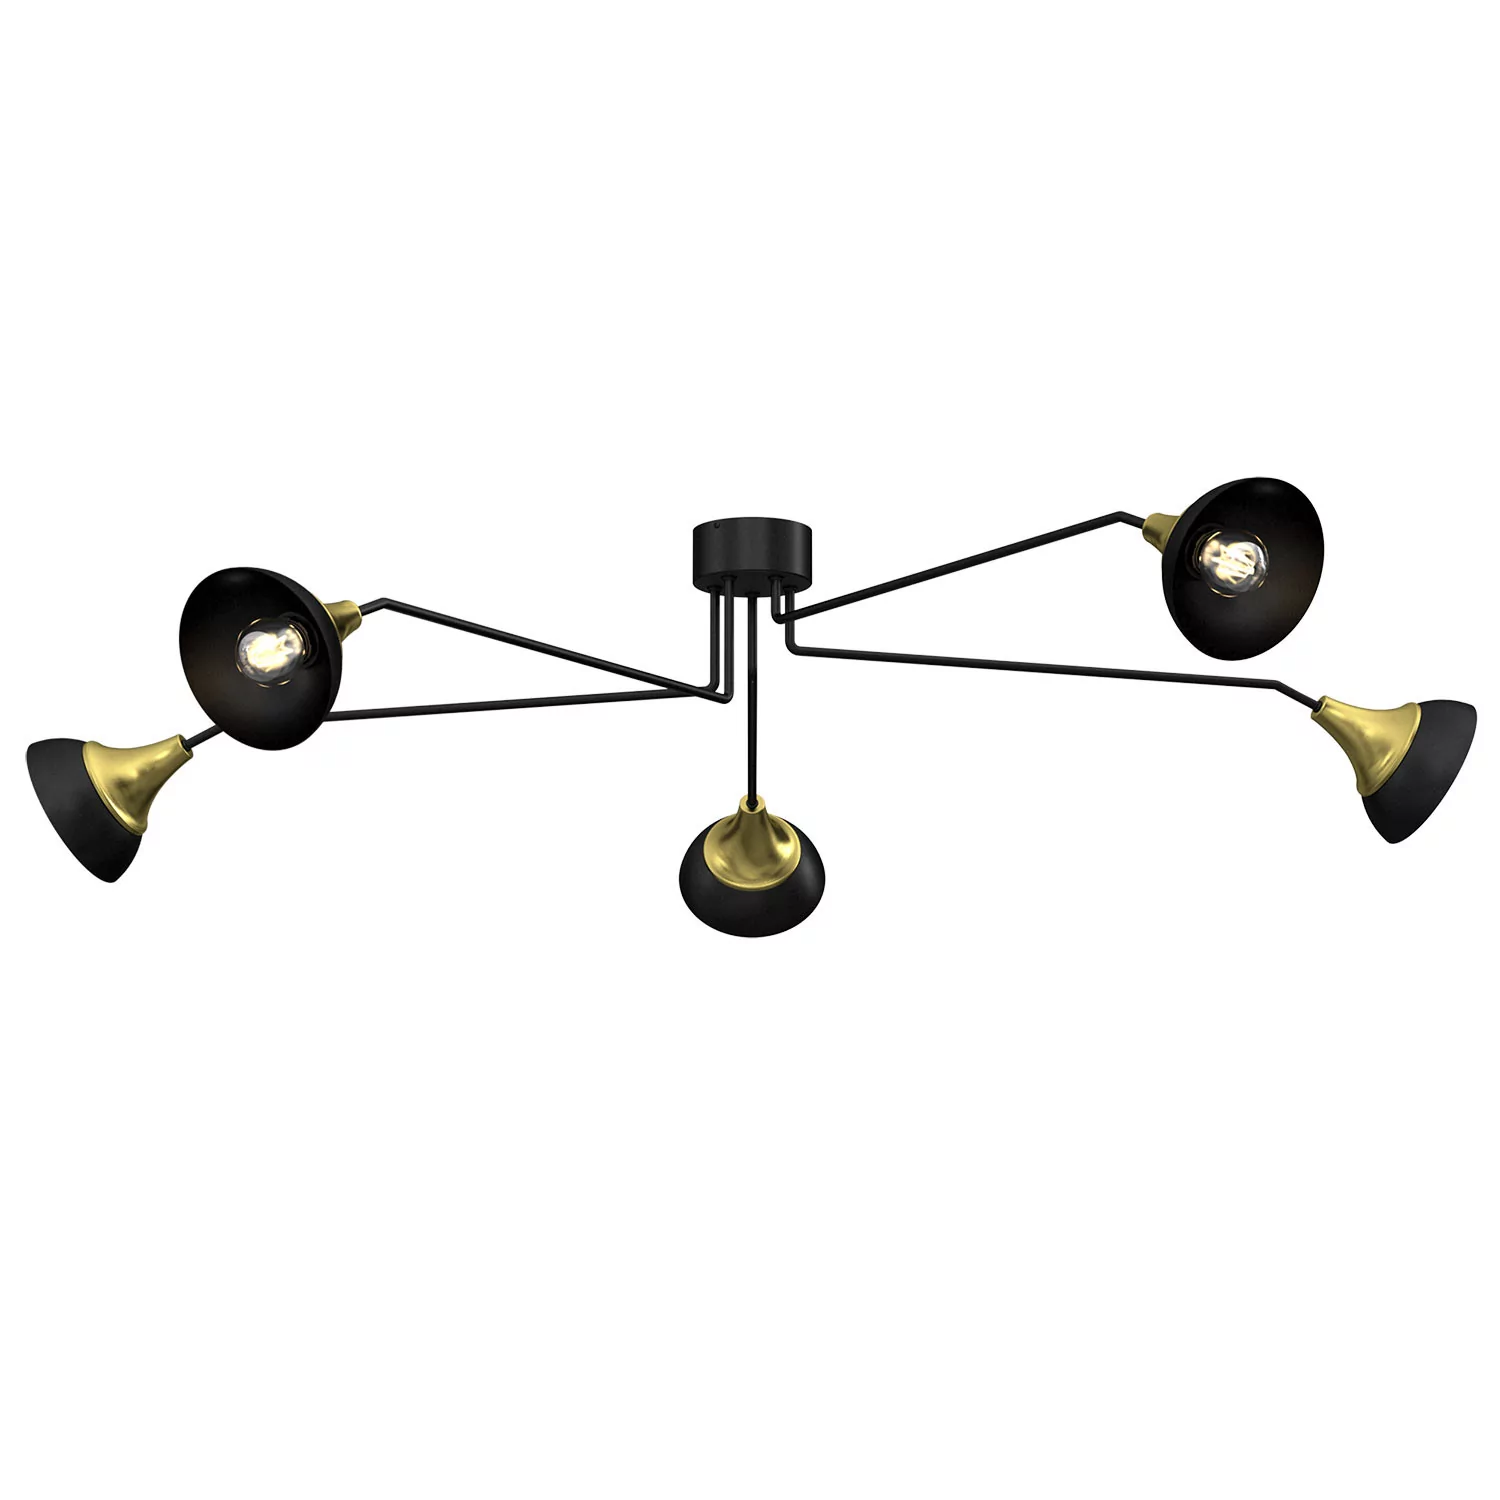 Luminex Nergis 3690 plafon lampa sufitowa 5x60W E27 czarny/złoty